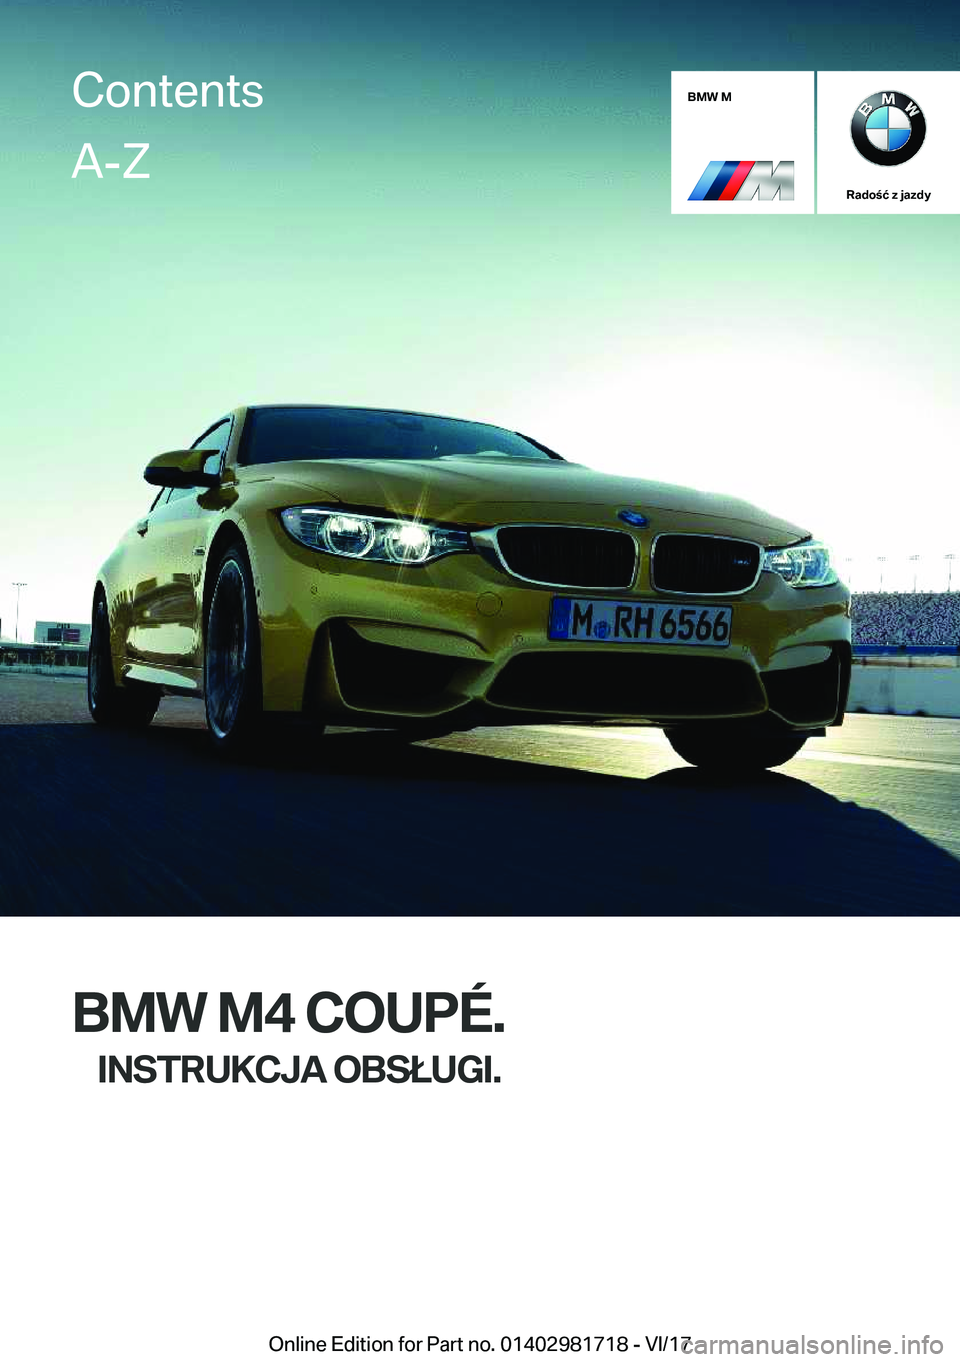 BMW M4 2018  Instrukcja obsługi (in Polish) �B�M�W��M
�R�a�d�o�